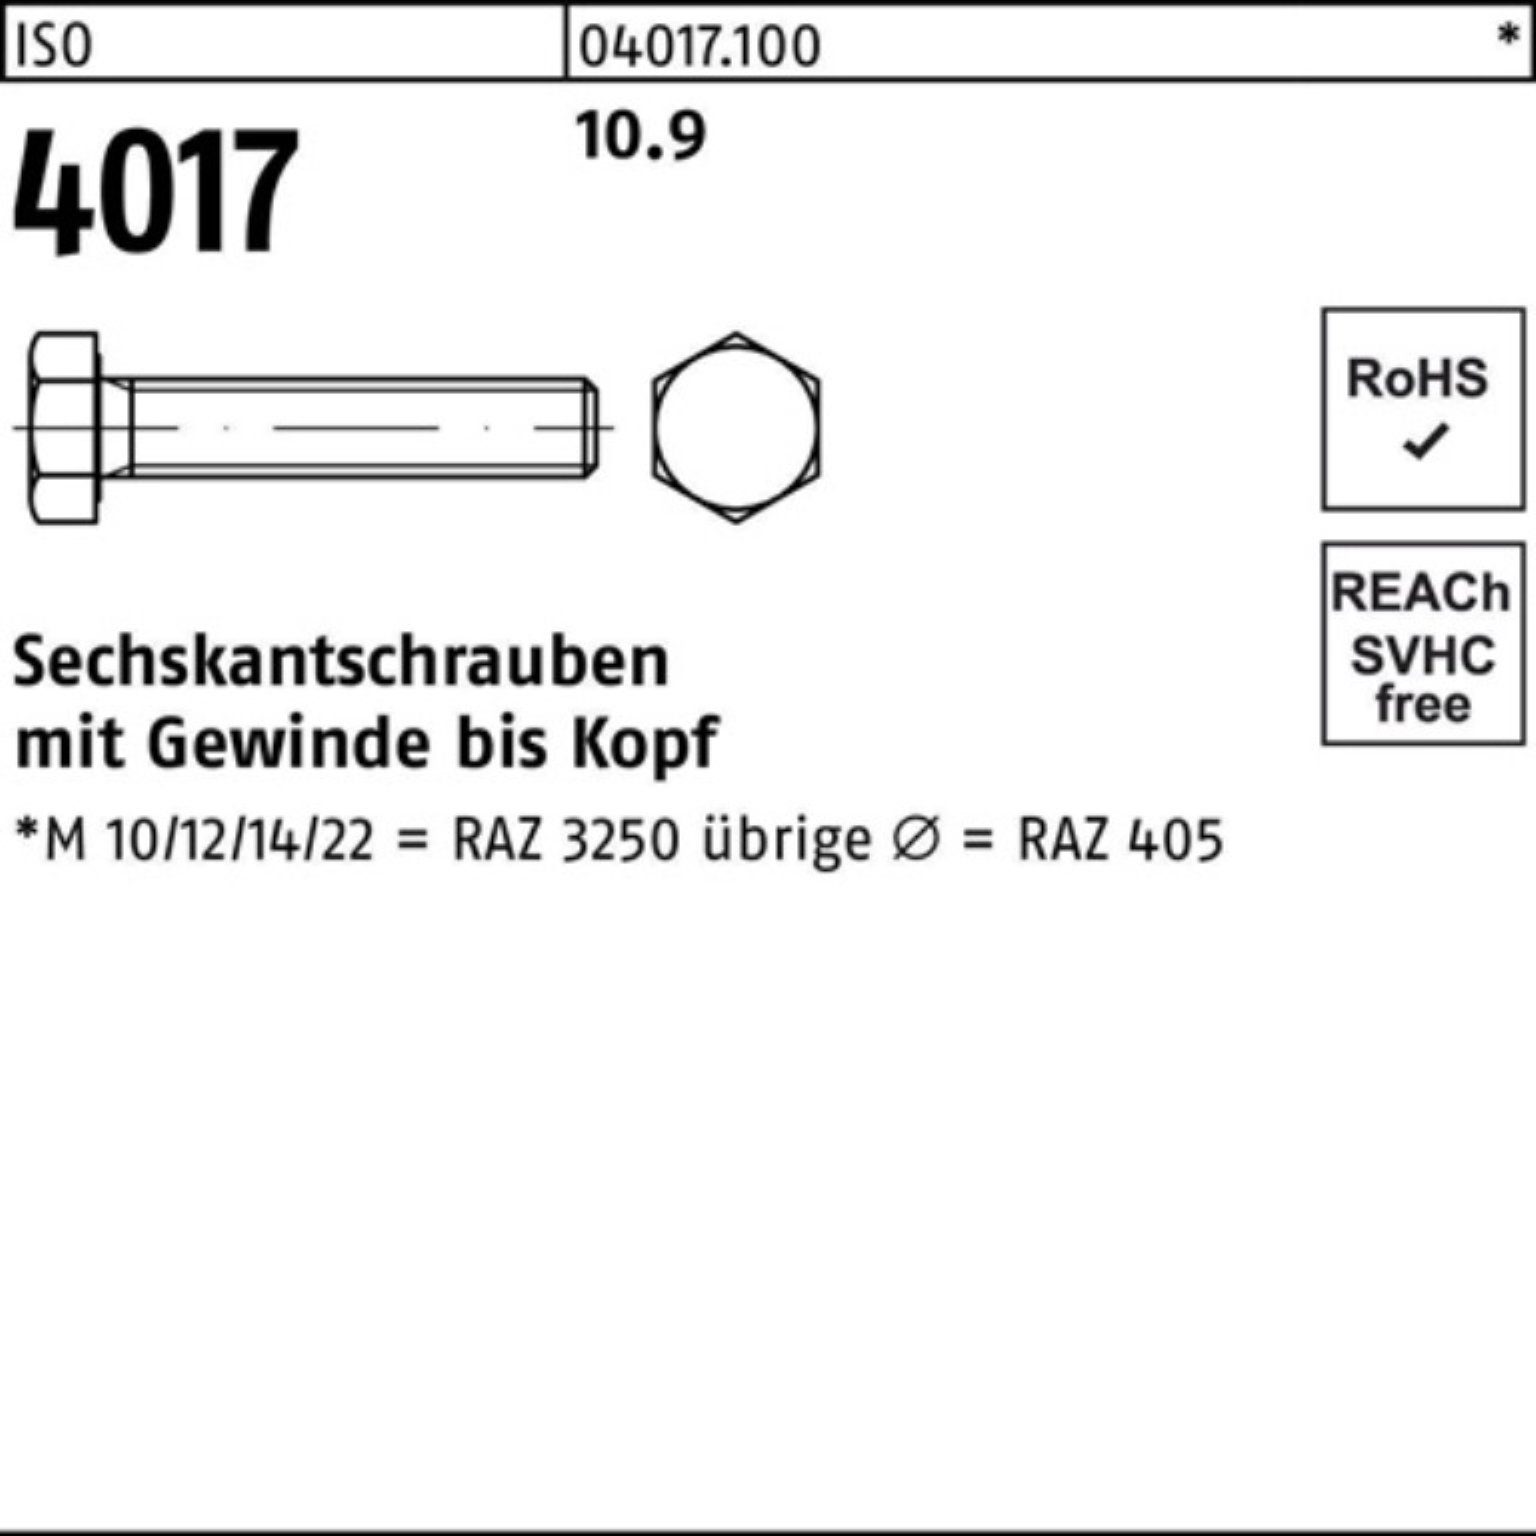 Pack Sechskantschraube Sechskantschraube 4017 VG M14x 10.9 Stück ISO Bufab 100er 50 90 ISO 40